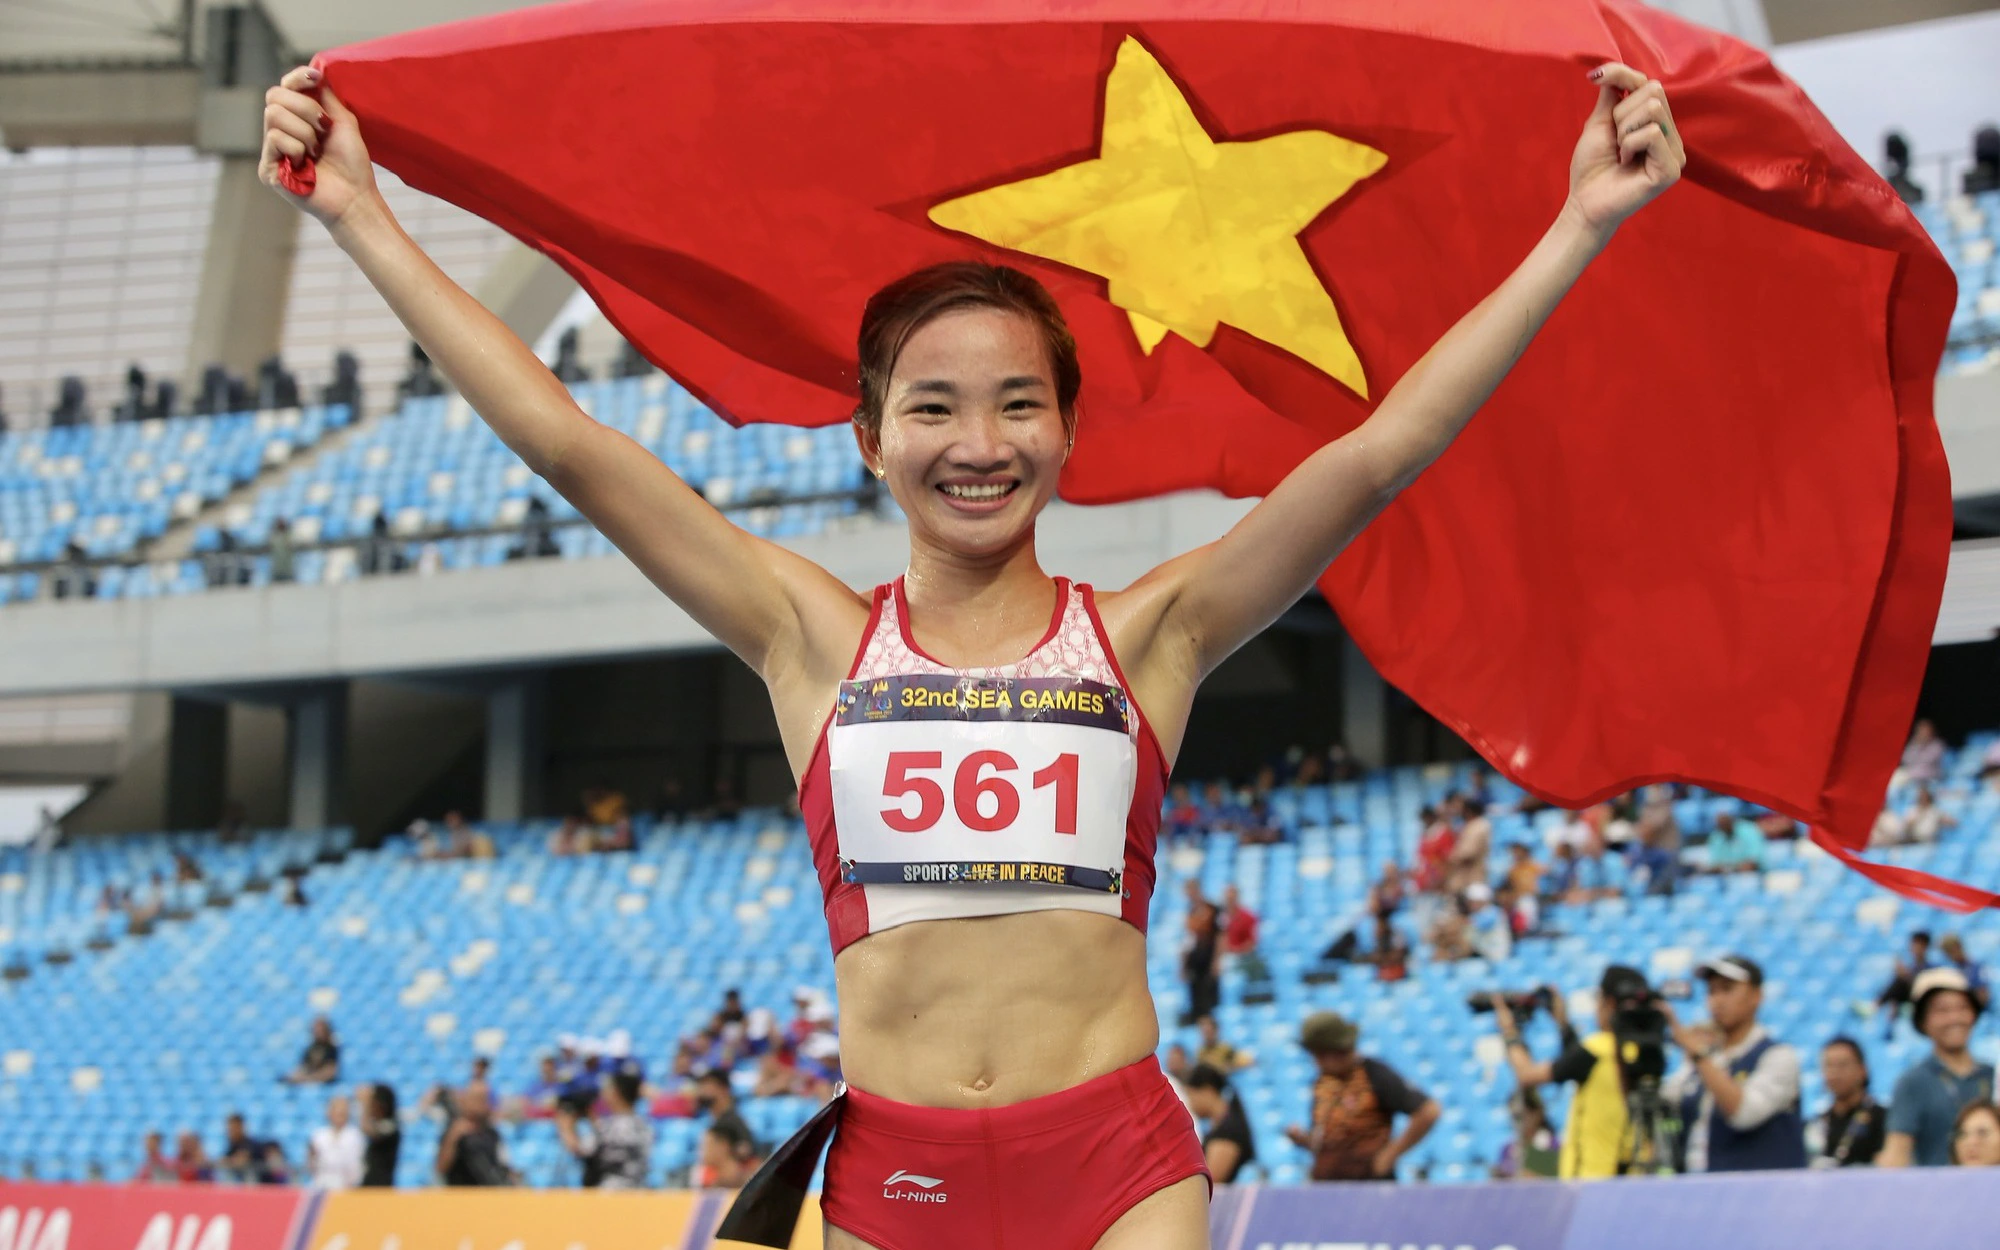 Người mẹ trẻ/ Bà mẹ một con Nguyễn Thị Huyền trên đường chạy nữ hoàng: Lập chiến tích chưa từng có ở SEA Games - Ảnh 1.